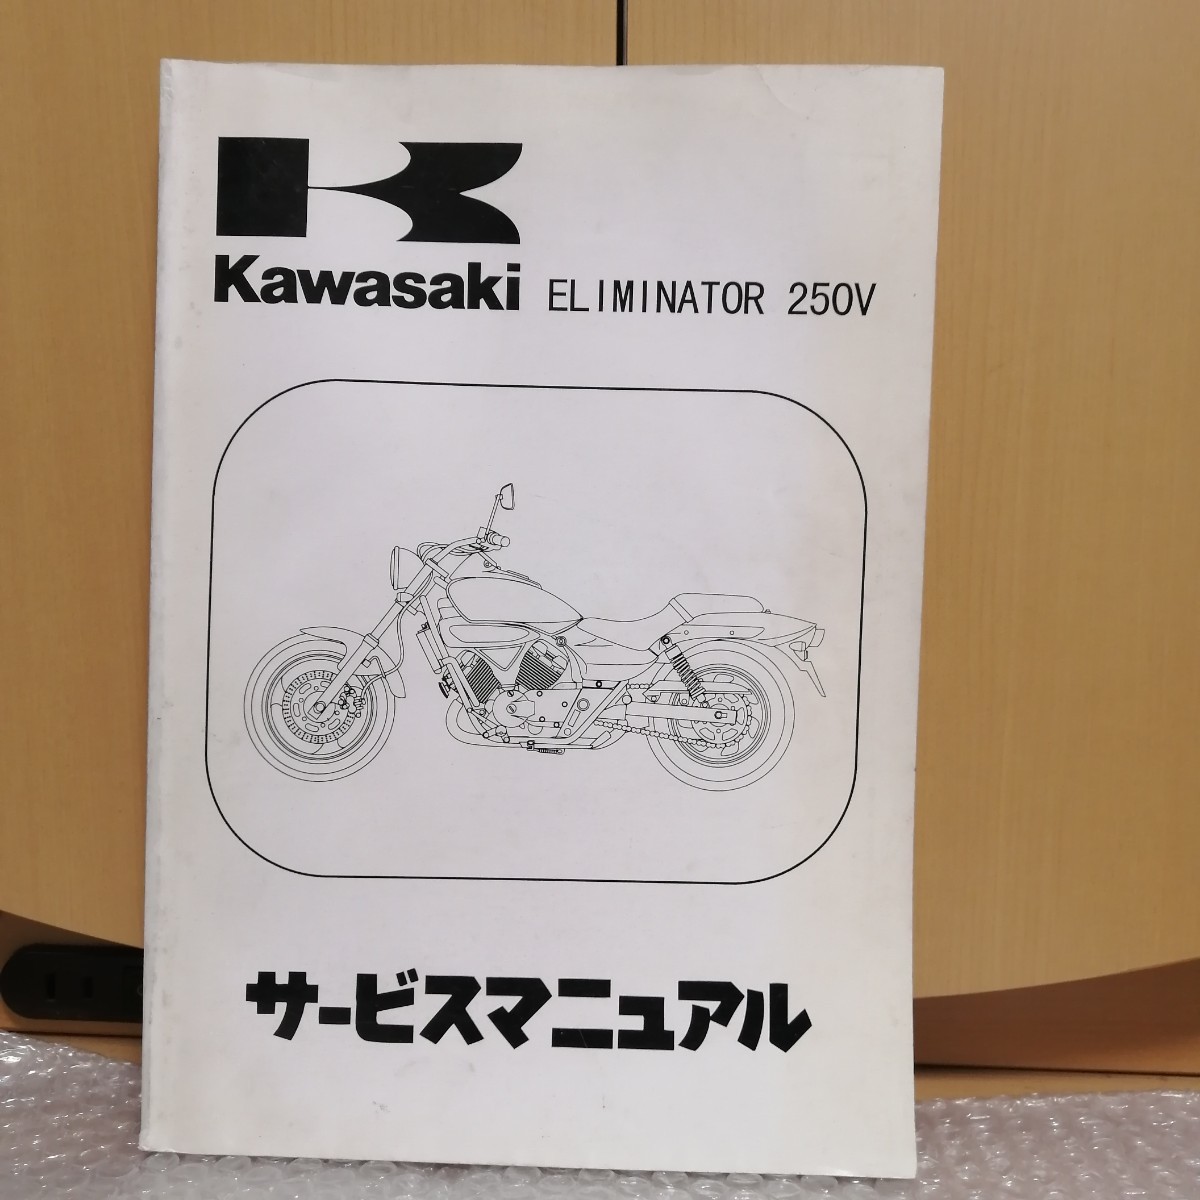  Kawasaki Eliminator 250V руководство по обслуживанию ELIMINATOR техническое обслуживание восстановление сервисная книжка книга по ремонту 